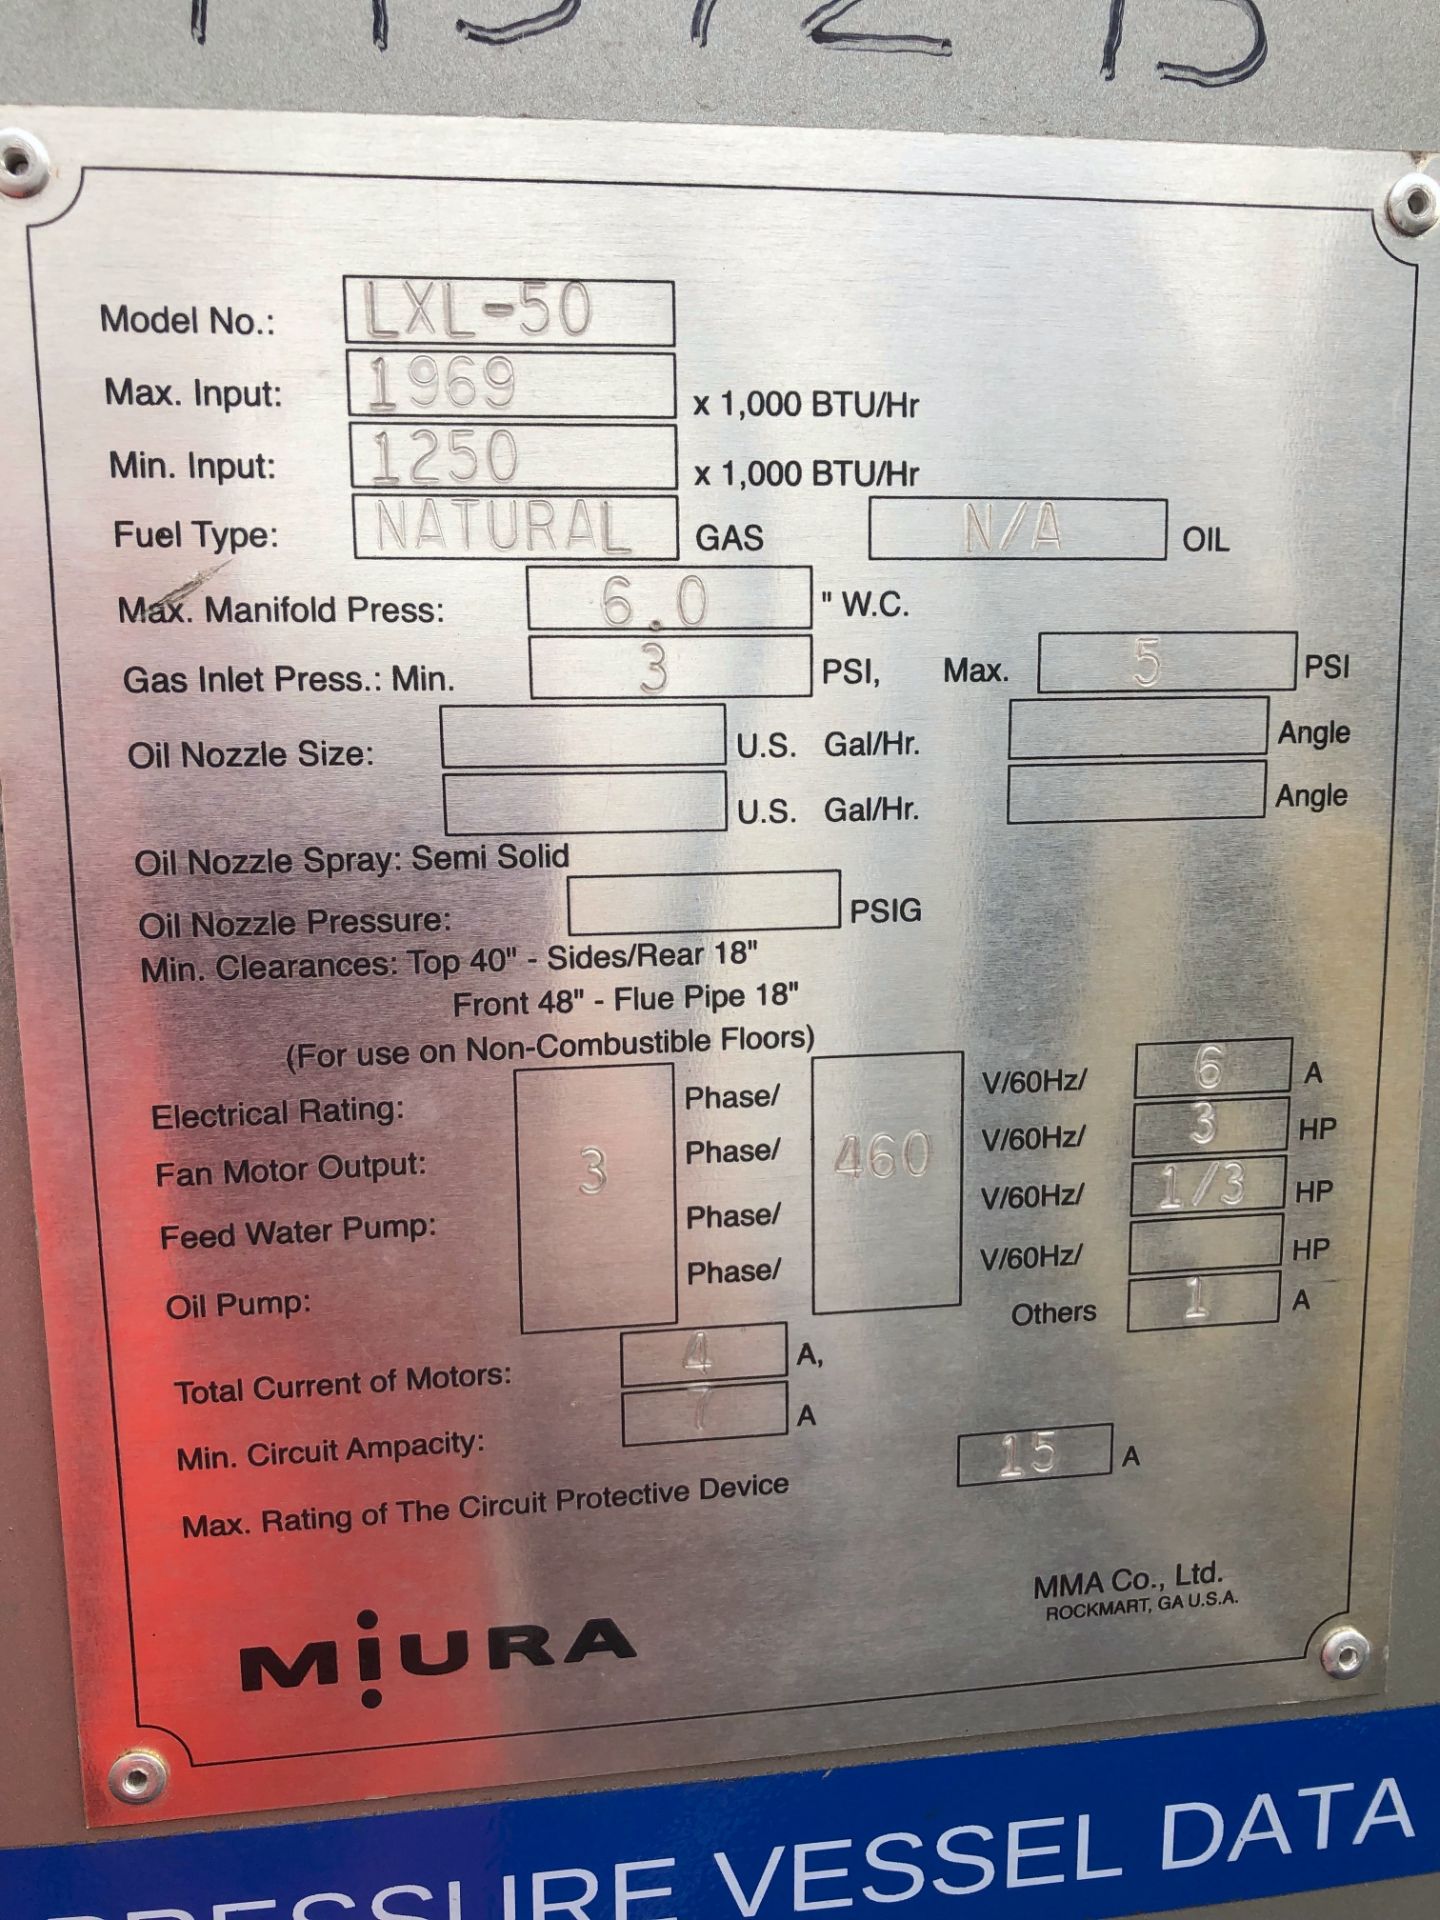 Miura LXL-50 Low Pressure Steam Boiler - Image 3 of 3